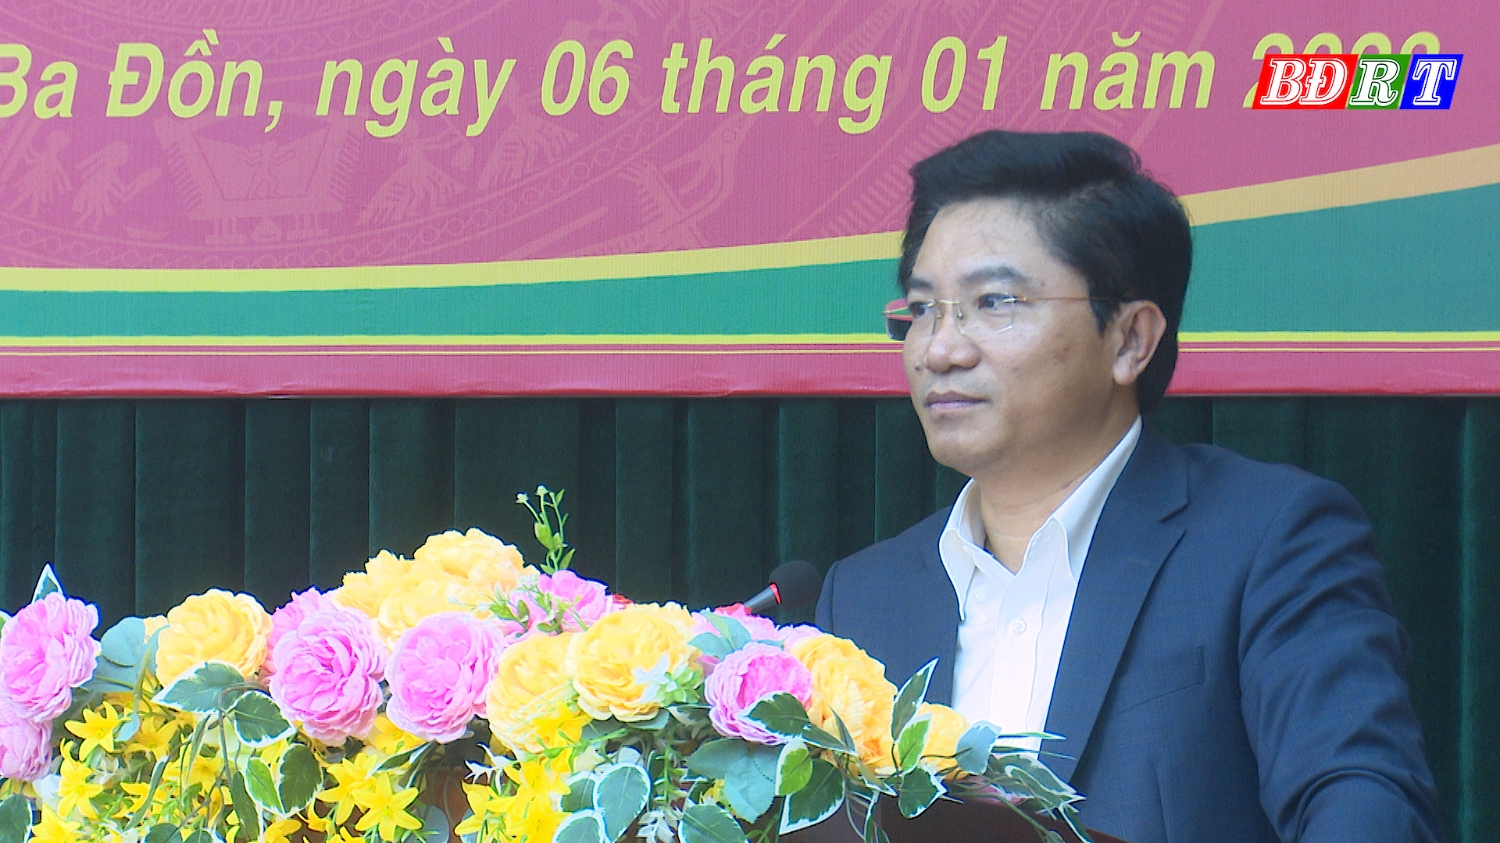 Đồng chí Trương An Ninh Bí thư Thị ủy Ba Đồn phát biểu kết luận hội nghị